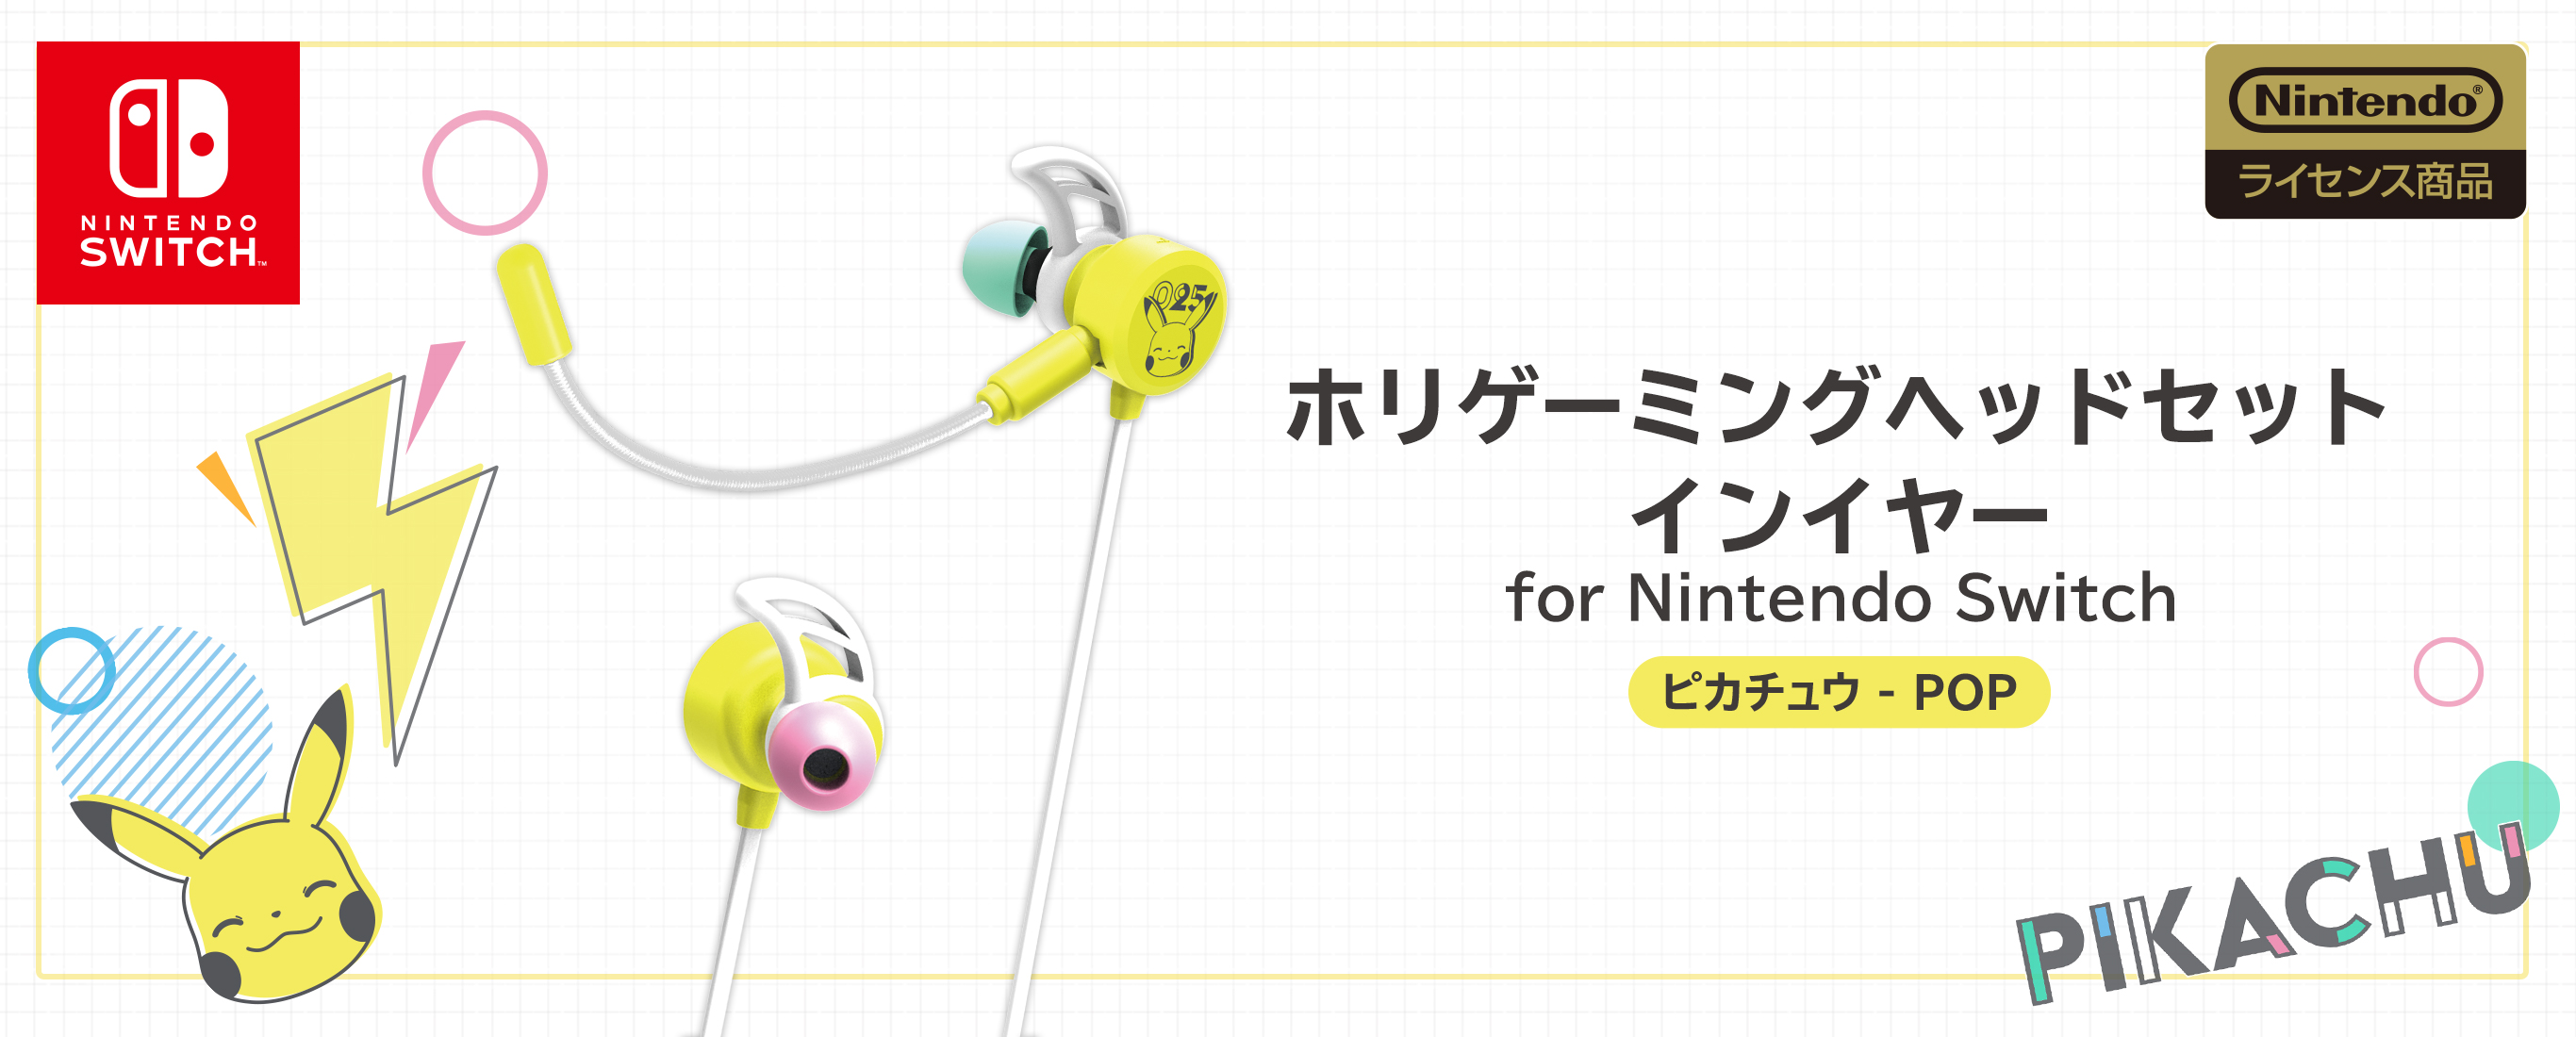 株式会社 Hori ホリゲーミングヘッドセット インイヤー For Nintendo Switch ピカチュウ Pop